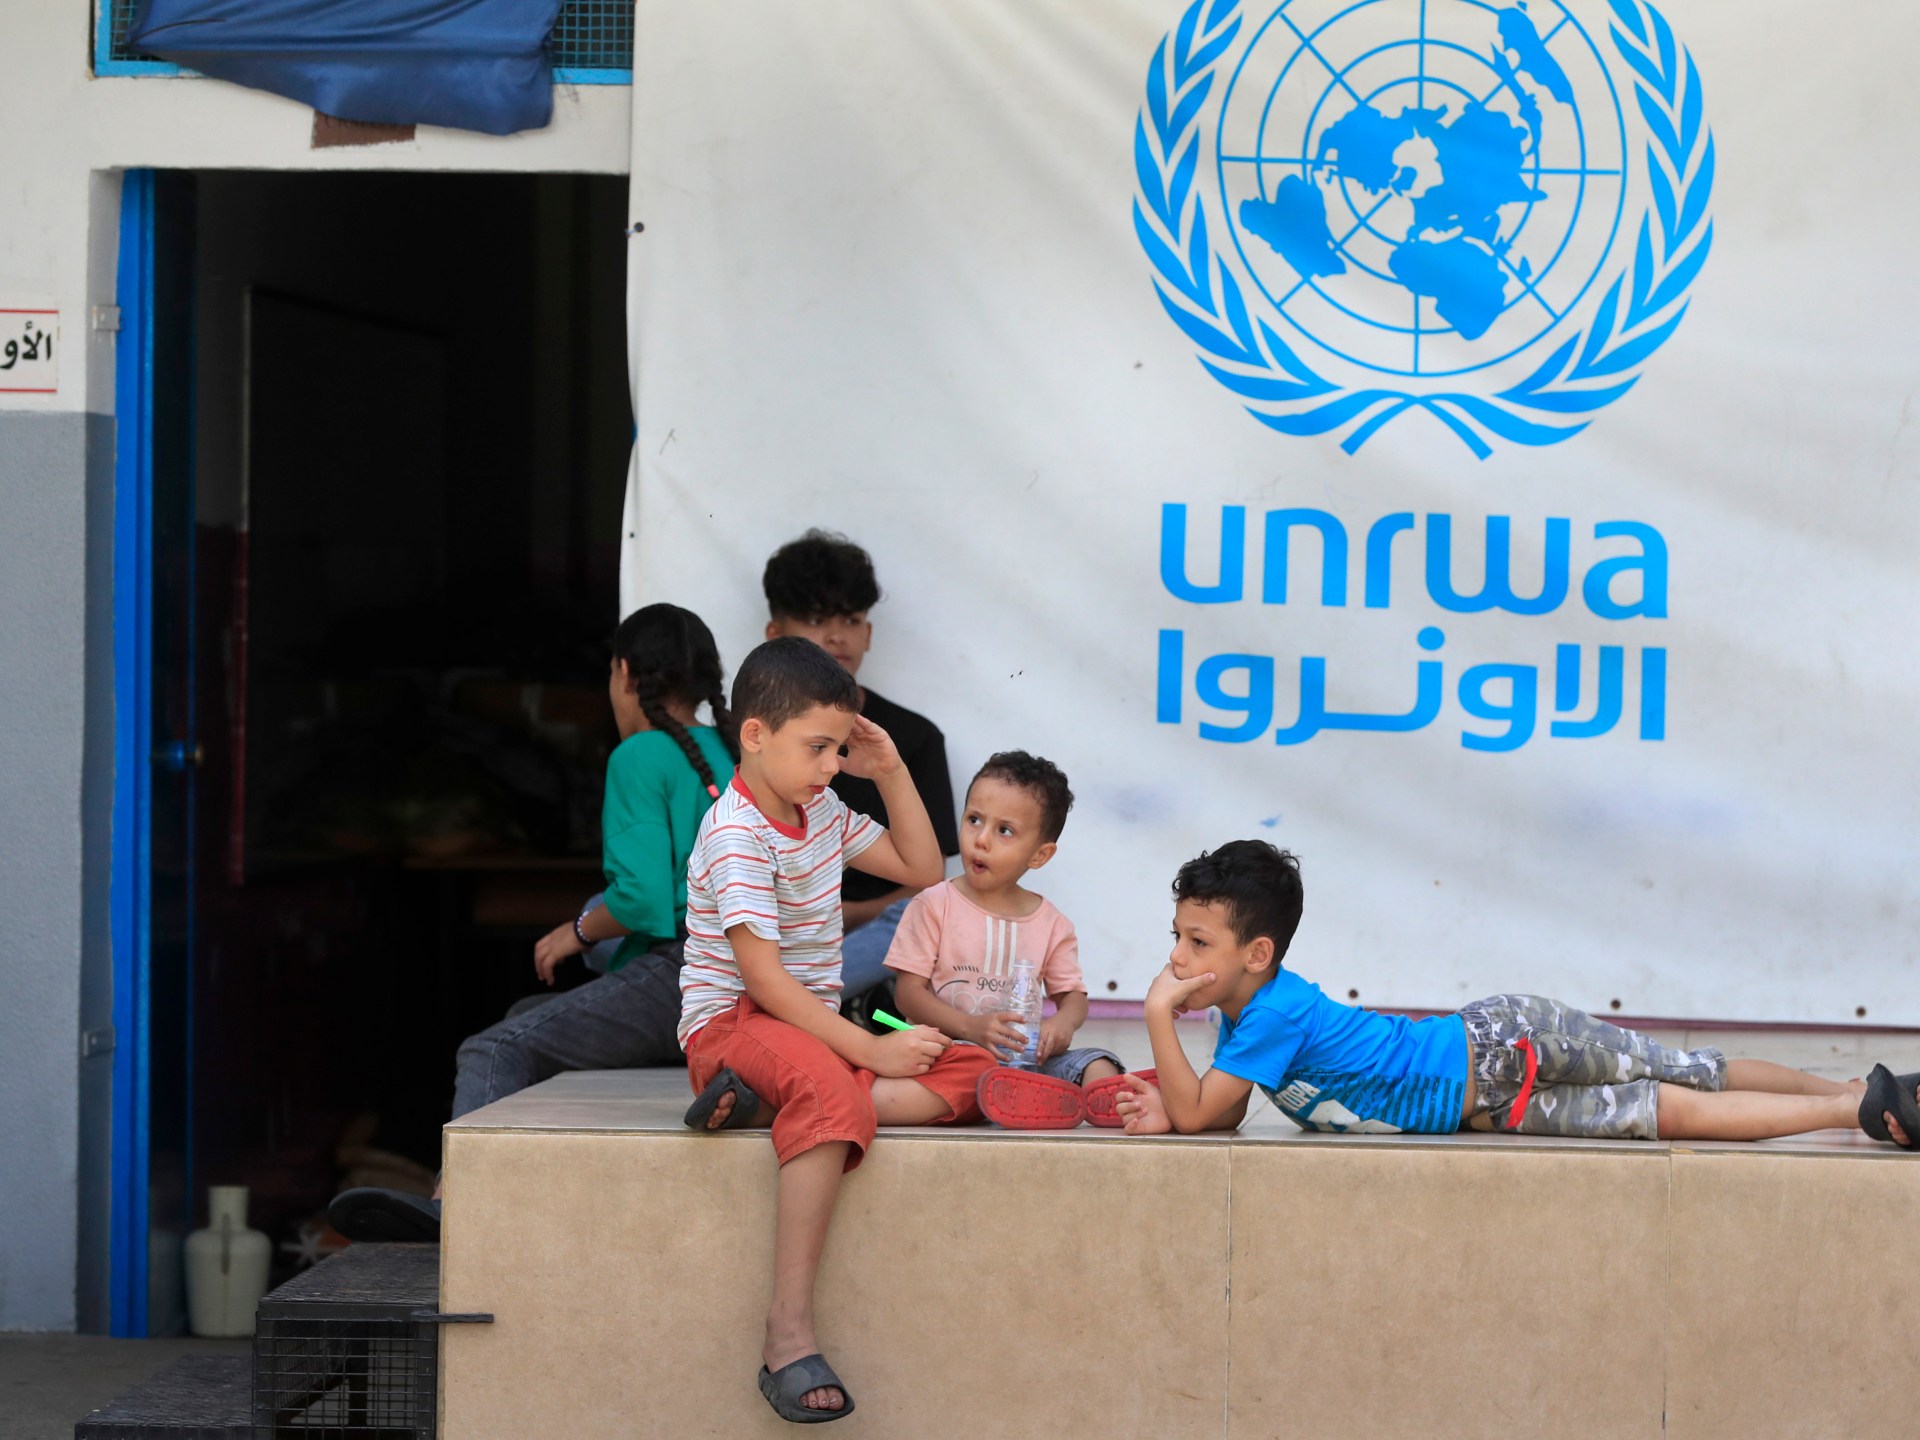 "أولوية مطلقة": على وكالات الأمم المتحدة العمل دون عوائق في غزة، بحسب مجموعة السبع |  أخبار الأونروا